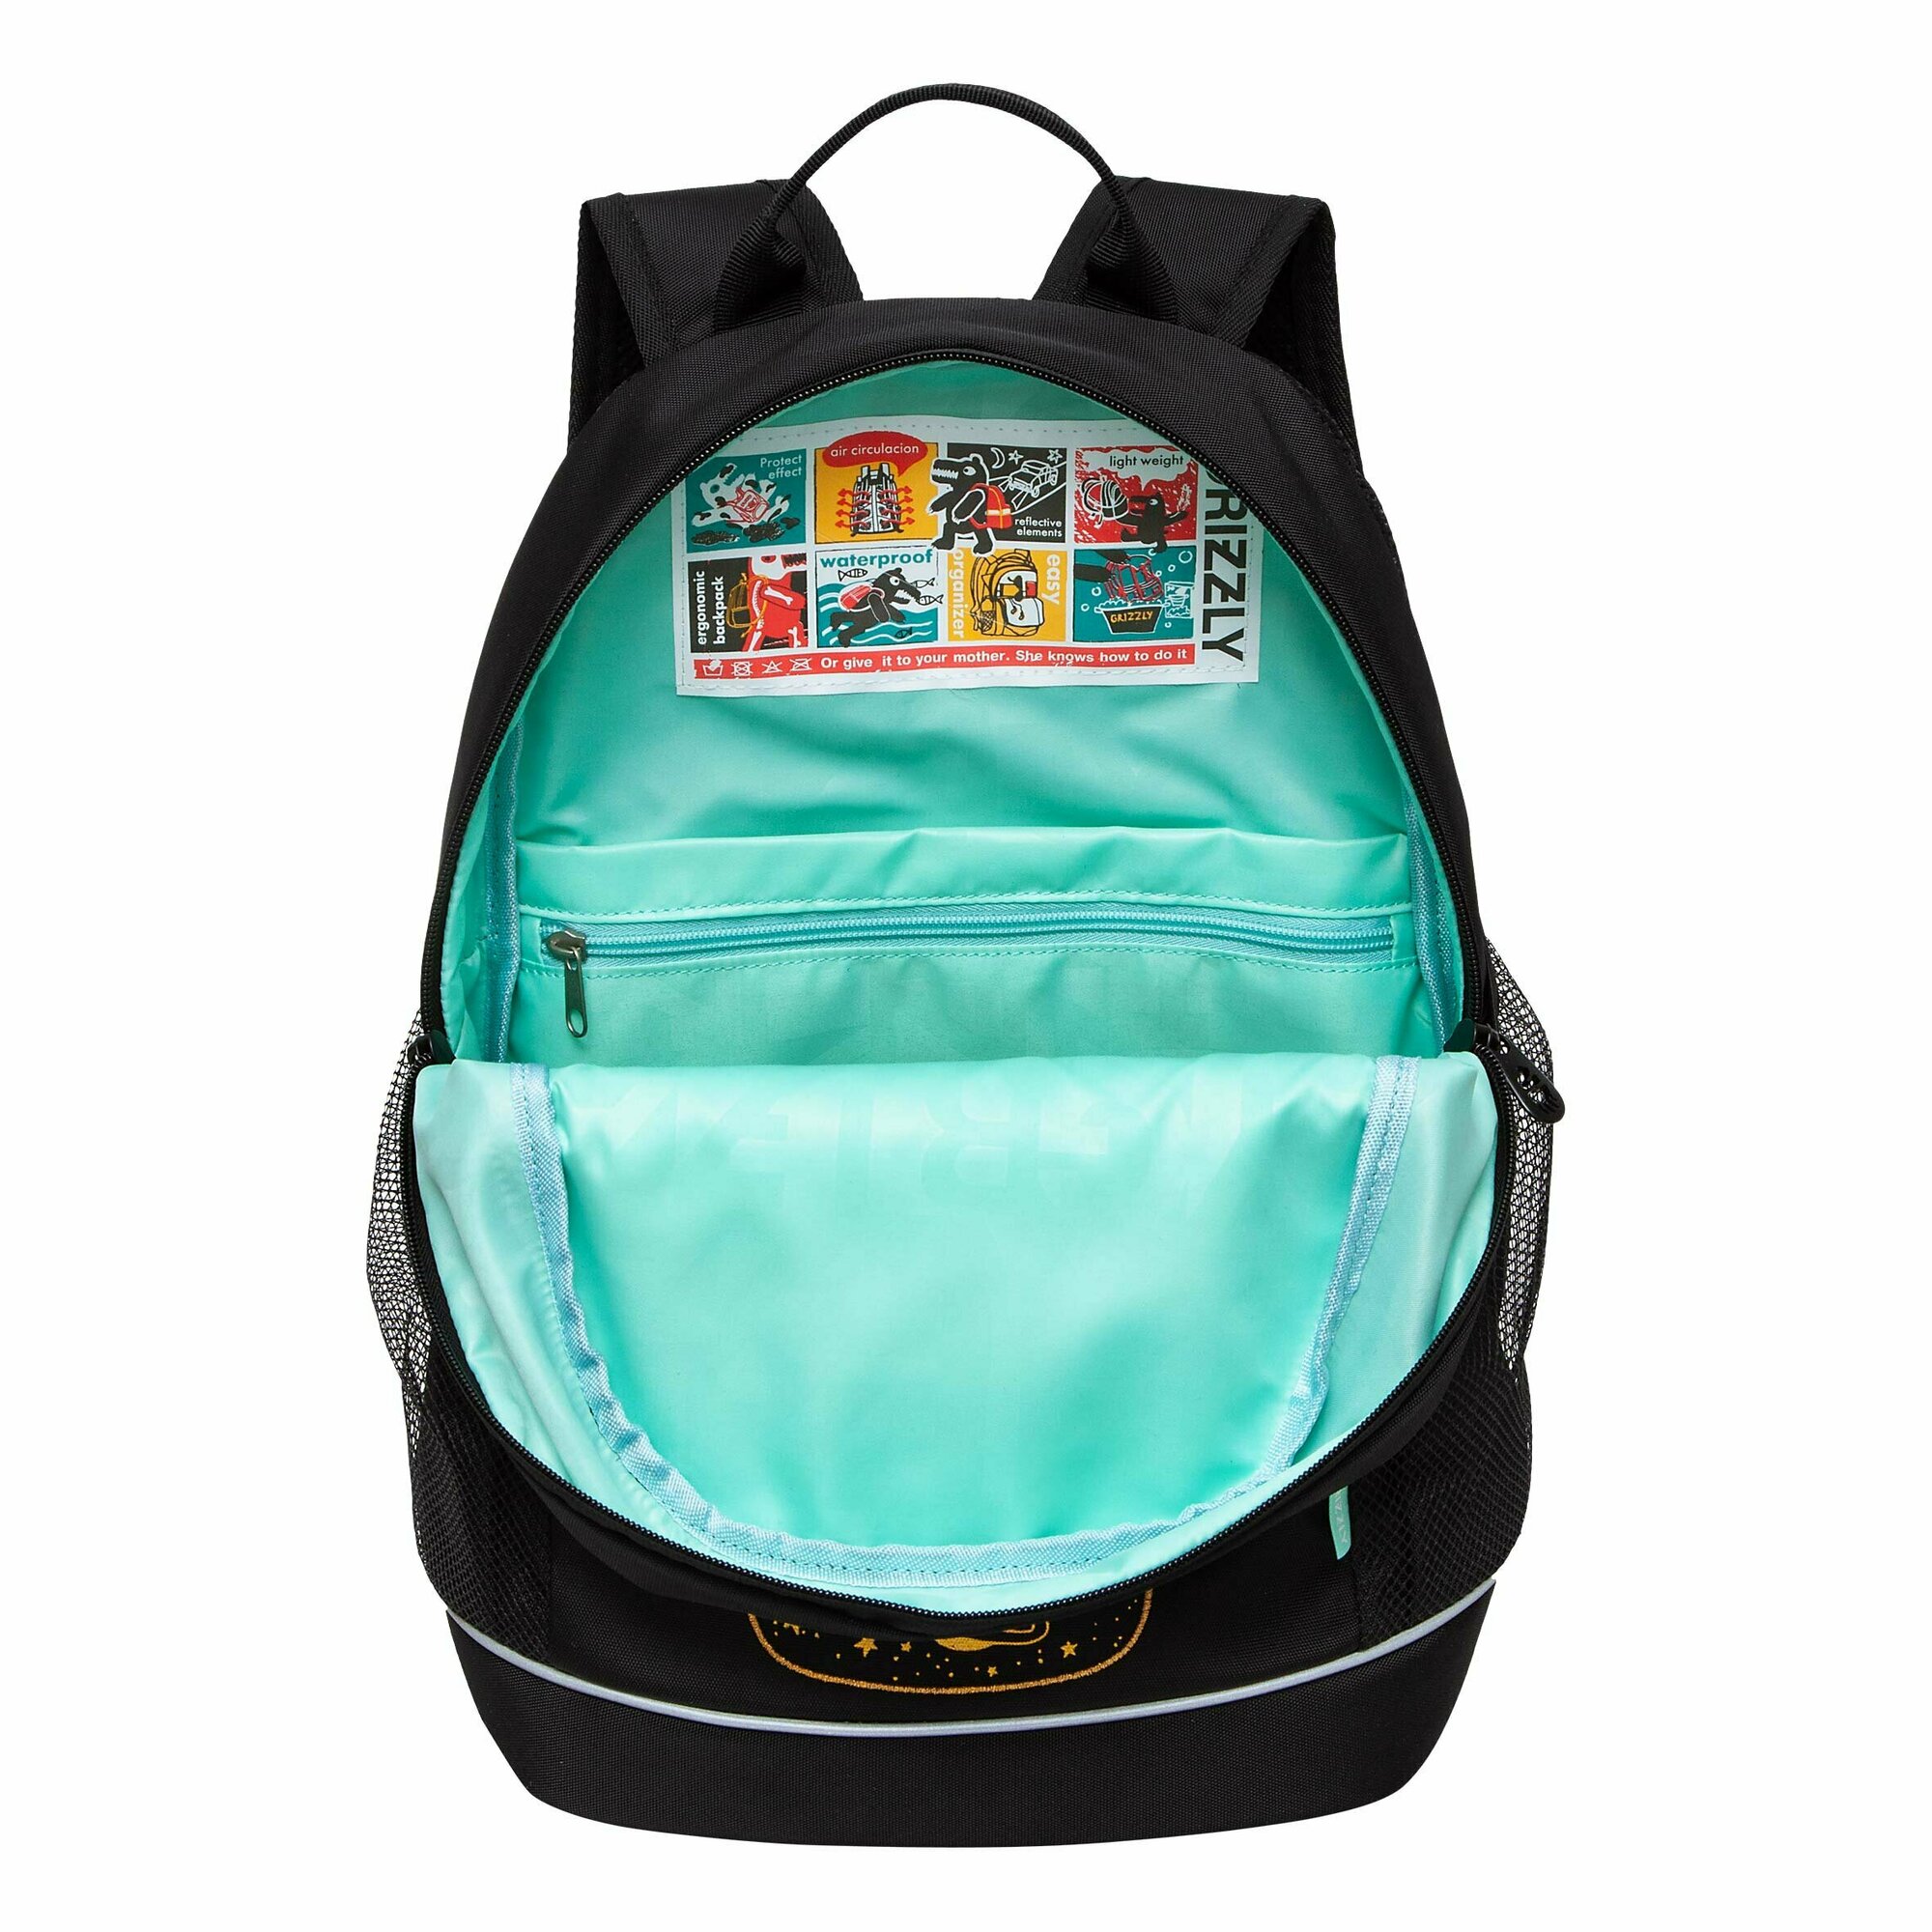 Рюкзак школьный GRIZZLY с карманом для ноутбука 13", жесткой спинкой, двумя отделениями, для девочки RG-463-3/2